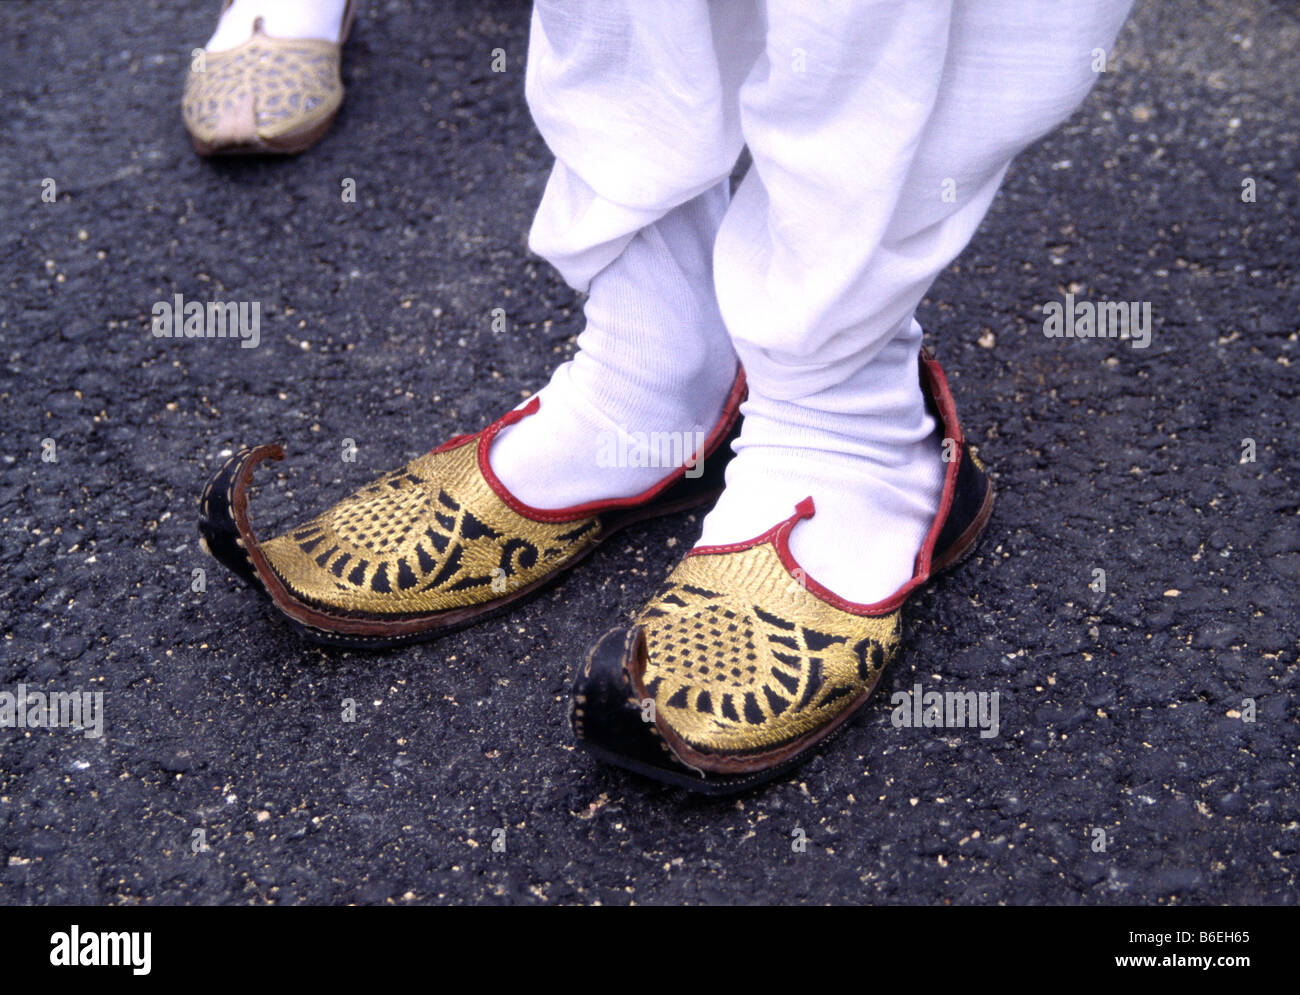 Aladdin shoes immagini e fotografie stock ad alta risoluzione - Alamy